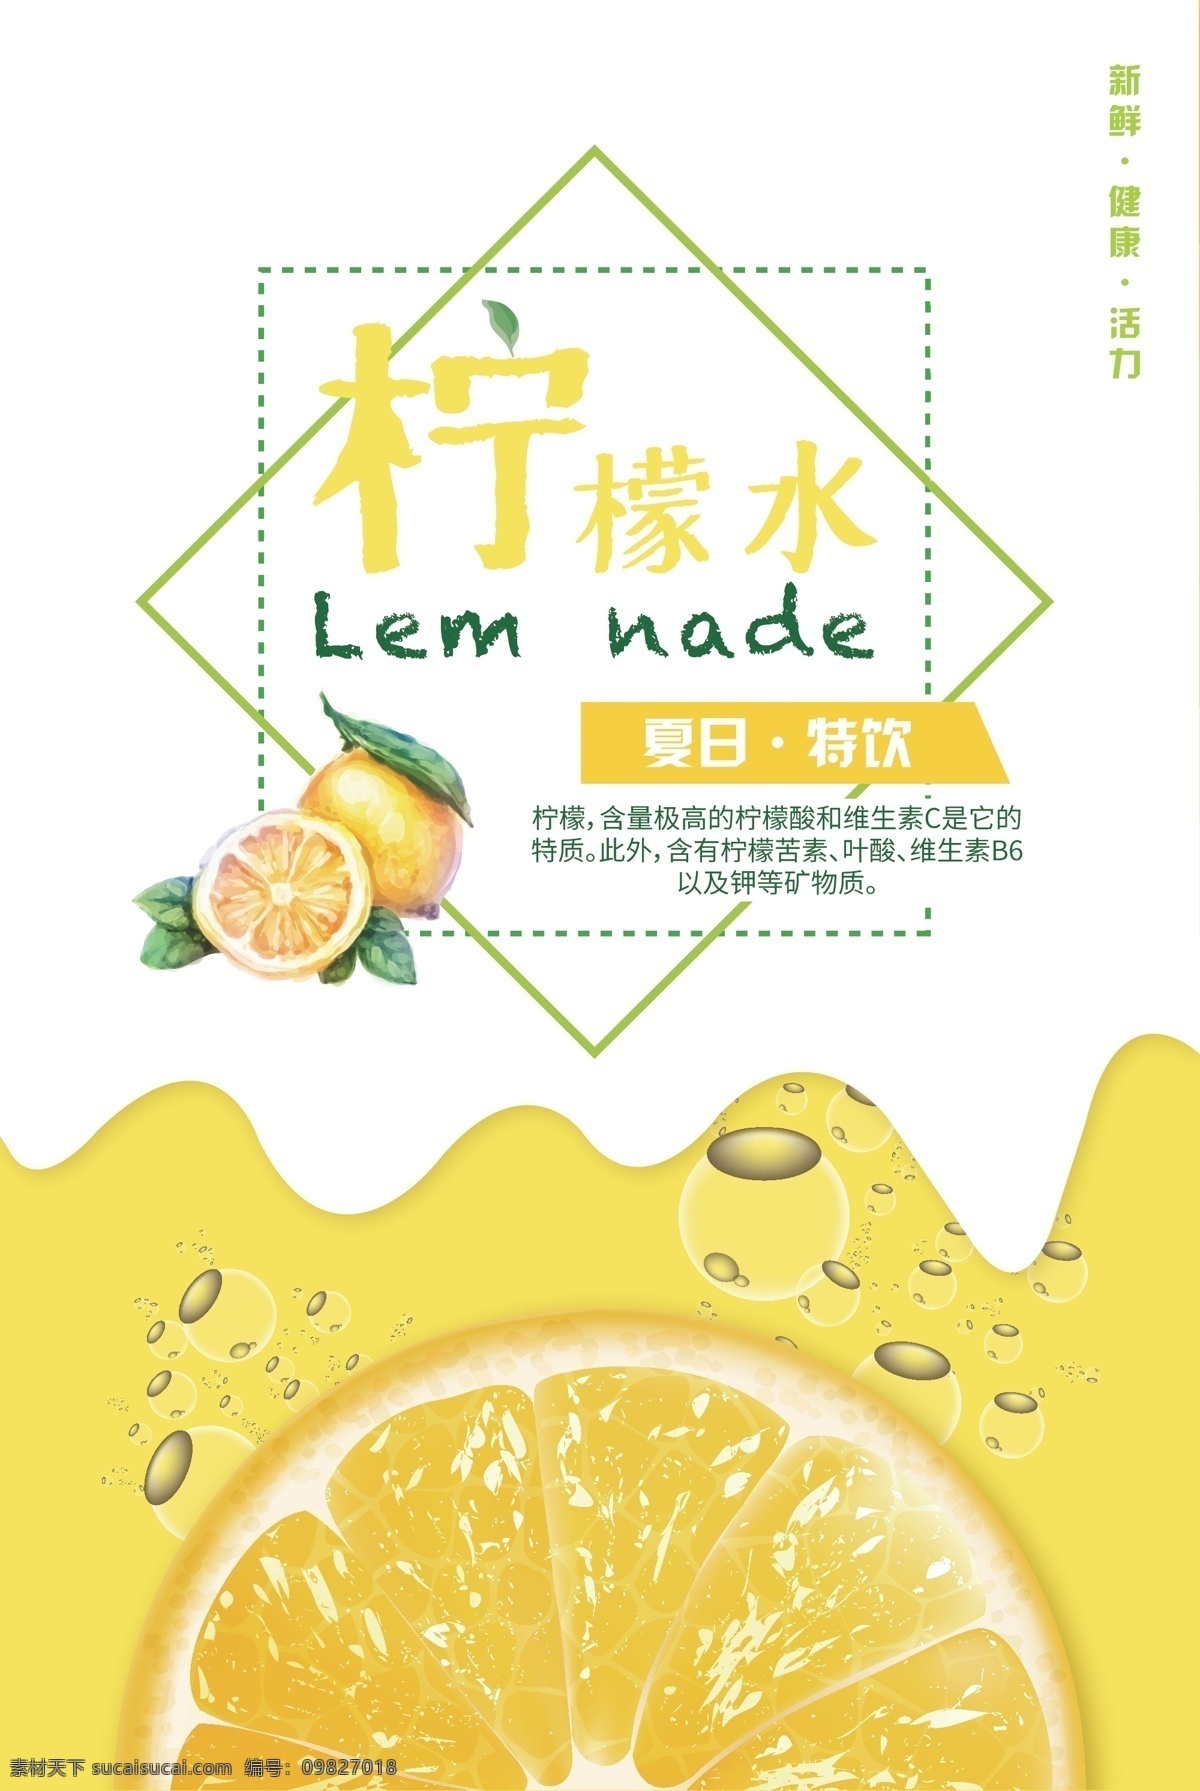 柠檬海报 柠檬 柠檬汁 饮料 饮品 餐饮 海报